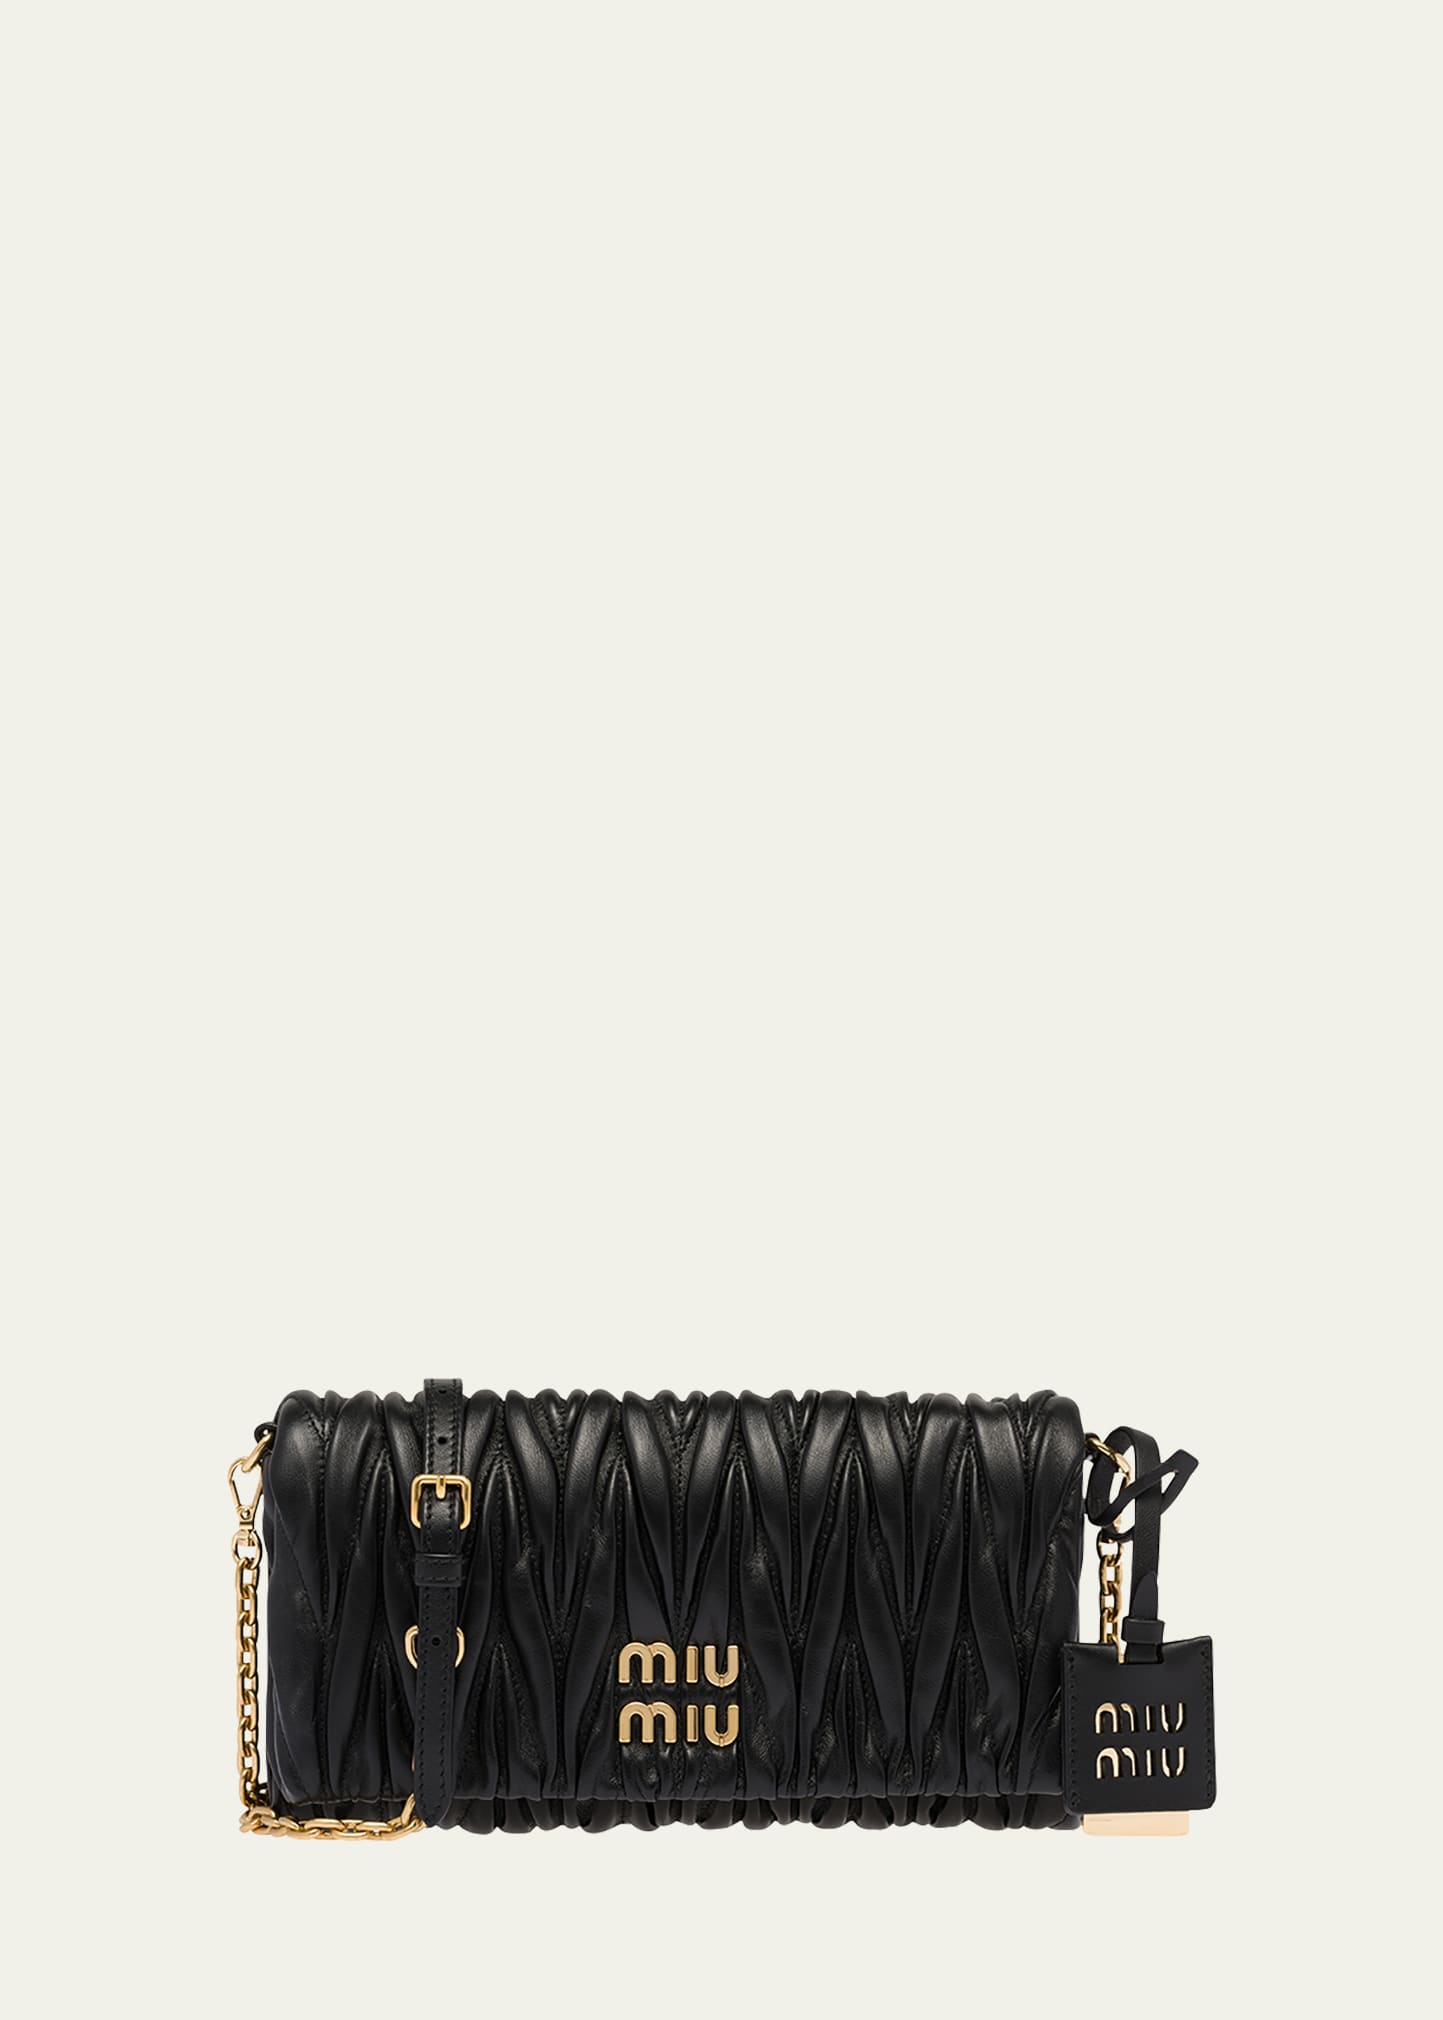 Miu Miu Nappa Leather Bag Bergdorf Goodman